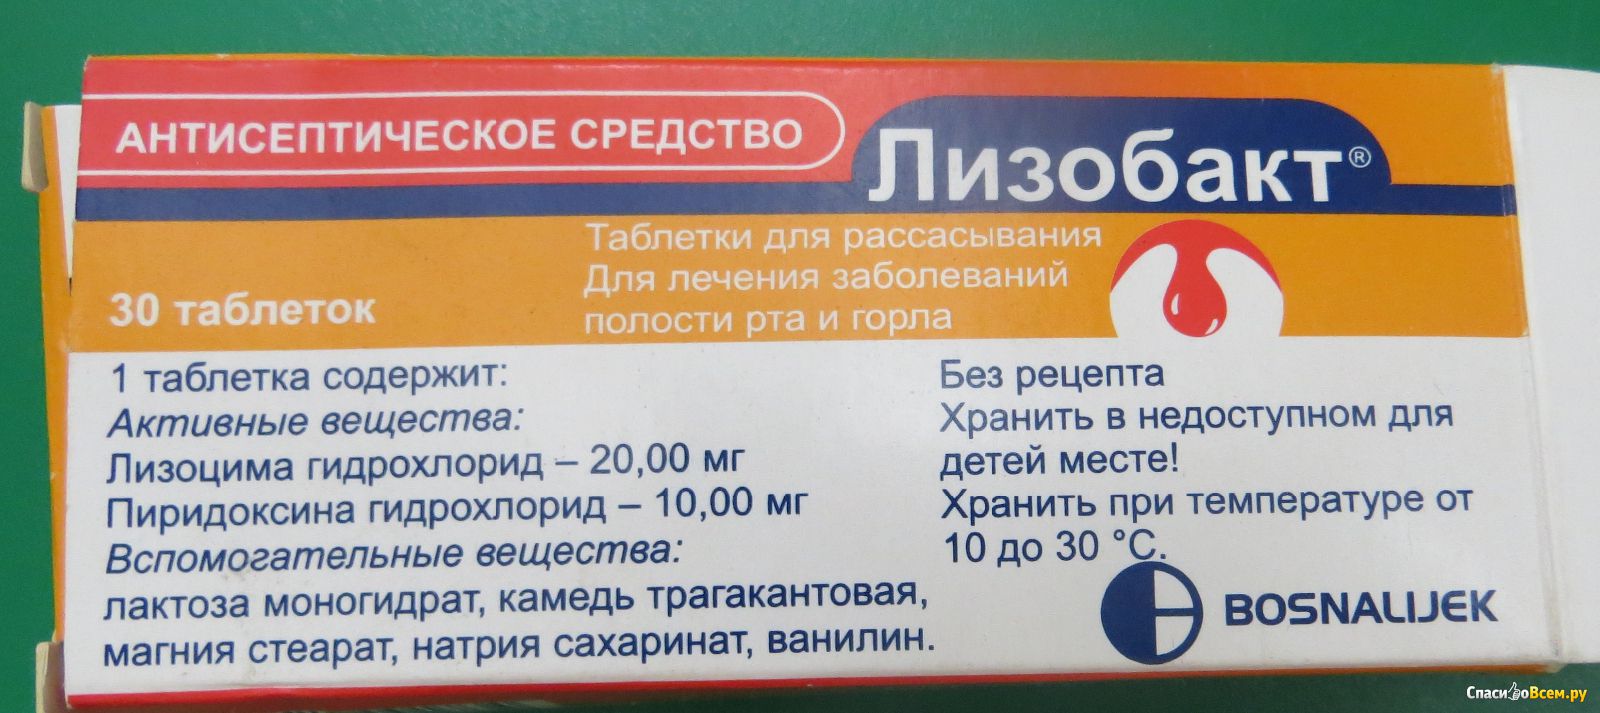 Цена На Лизобакт В Аптеках Казани